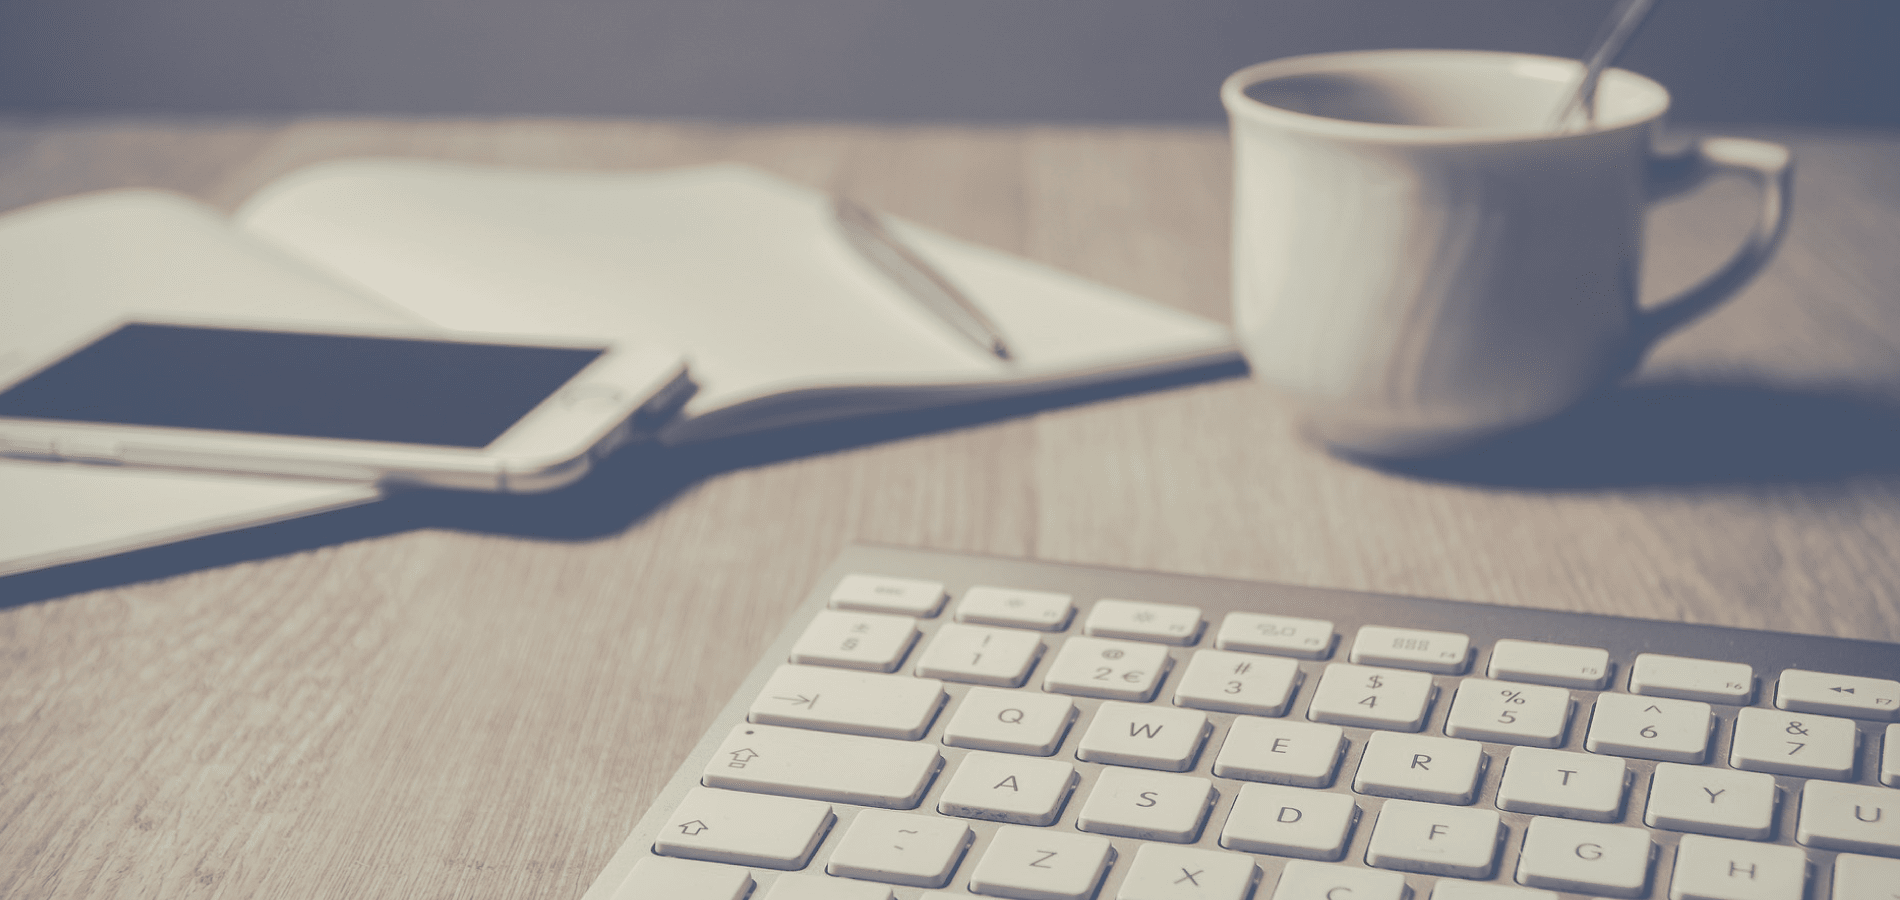 keyboard, notebook, phone and mug on a desk